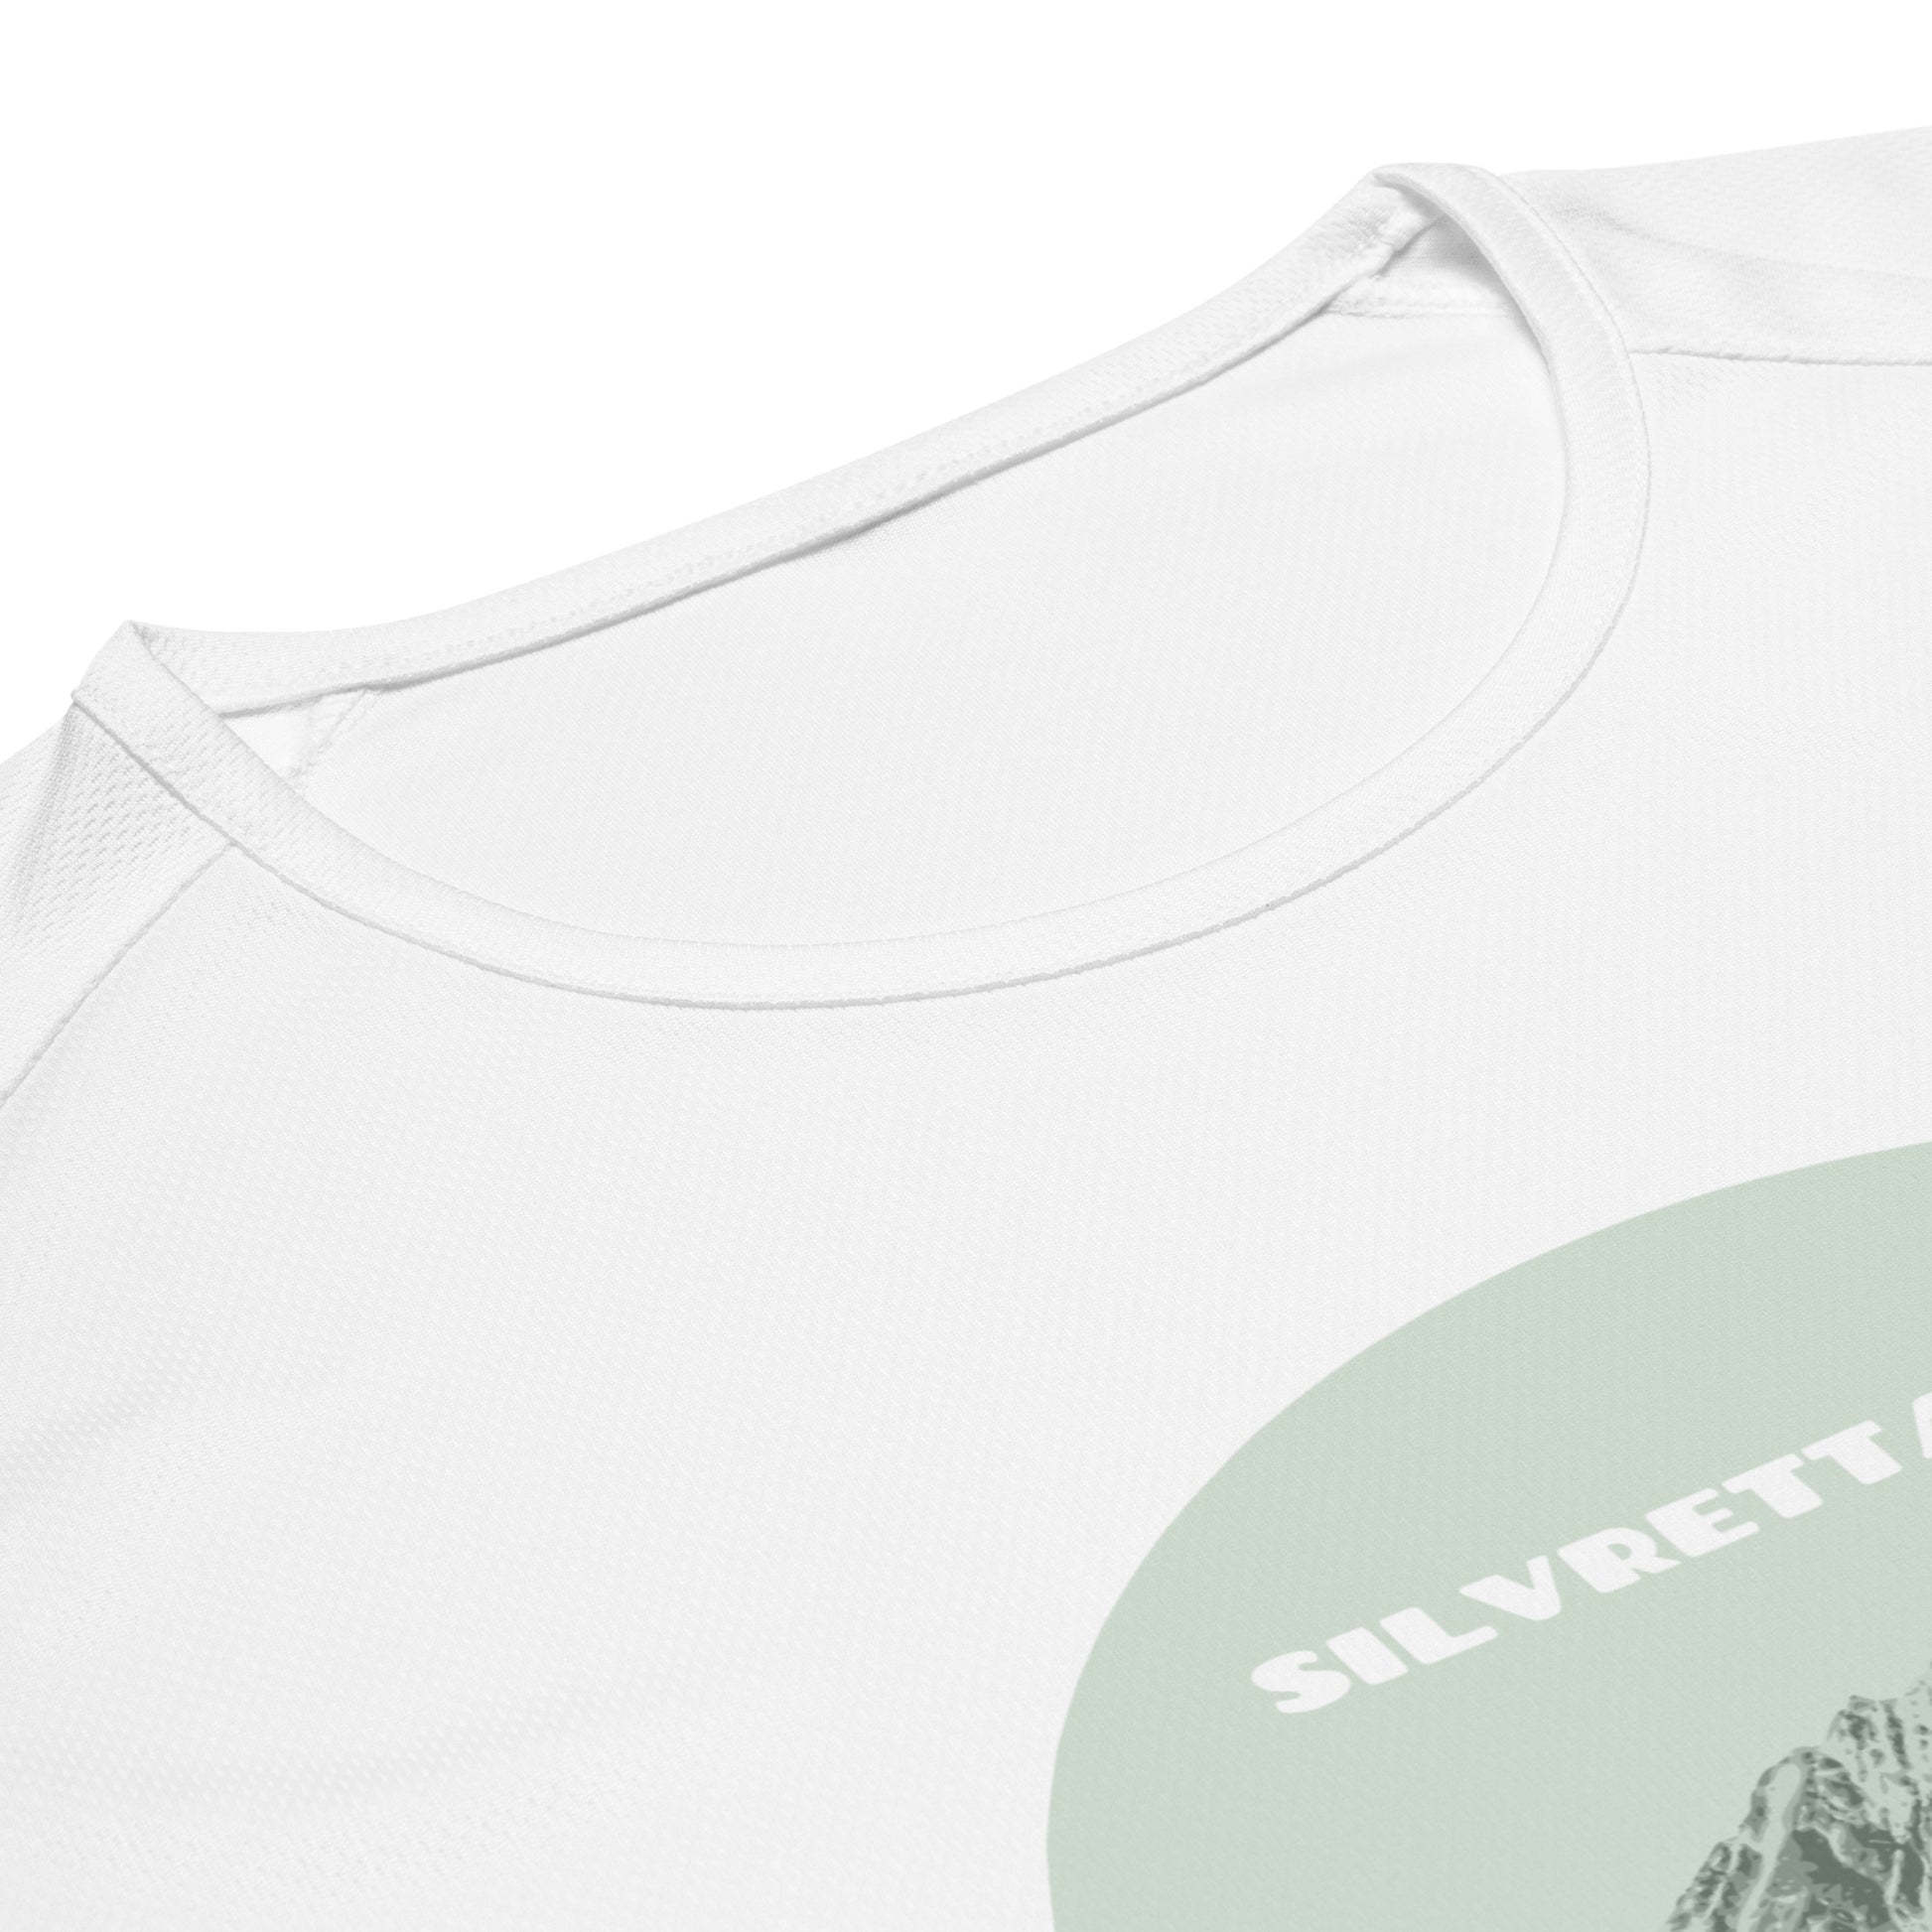 Kragenpartie eines weissen Herren-Sport-Shirts mit einem Aufdruck, der das Silvrettahorn zeigt.